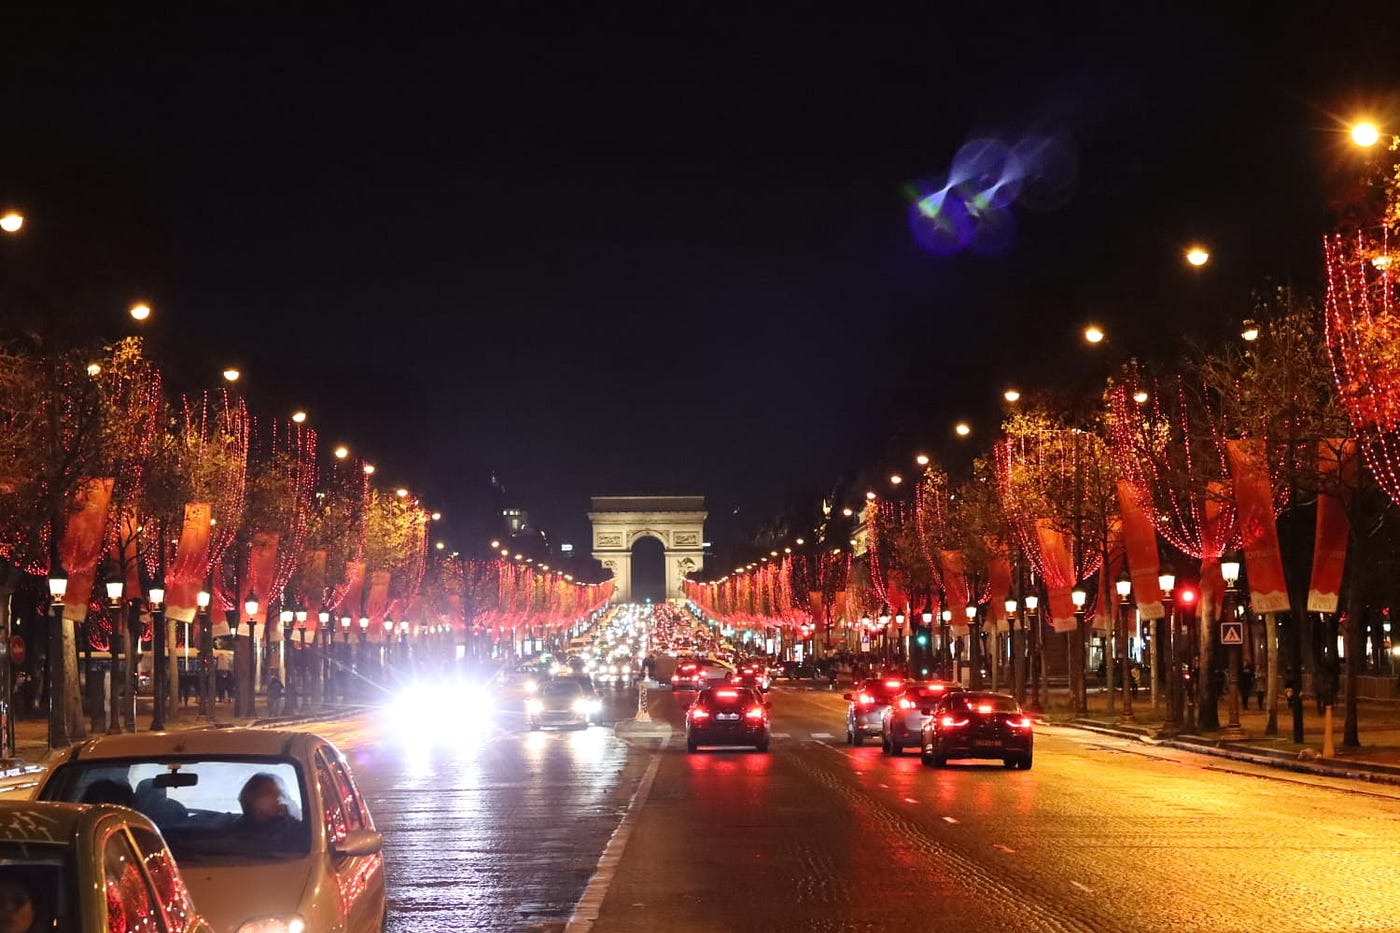 Champs-Elysées avenue in Paris again the most attractive high